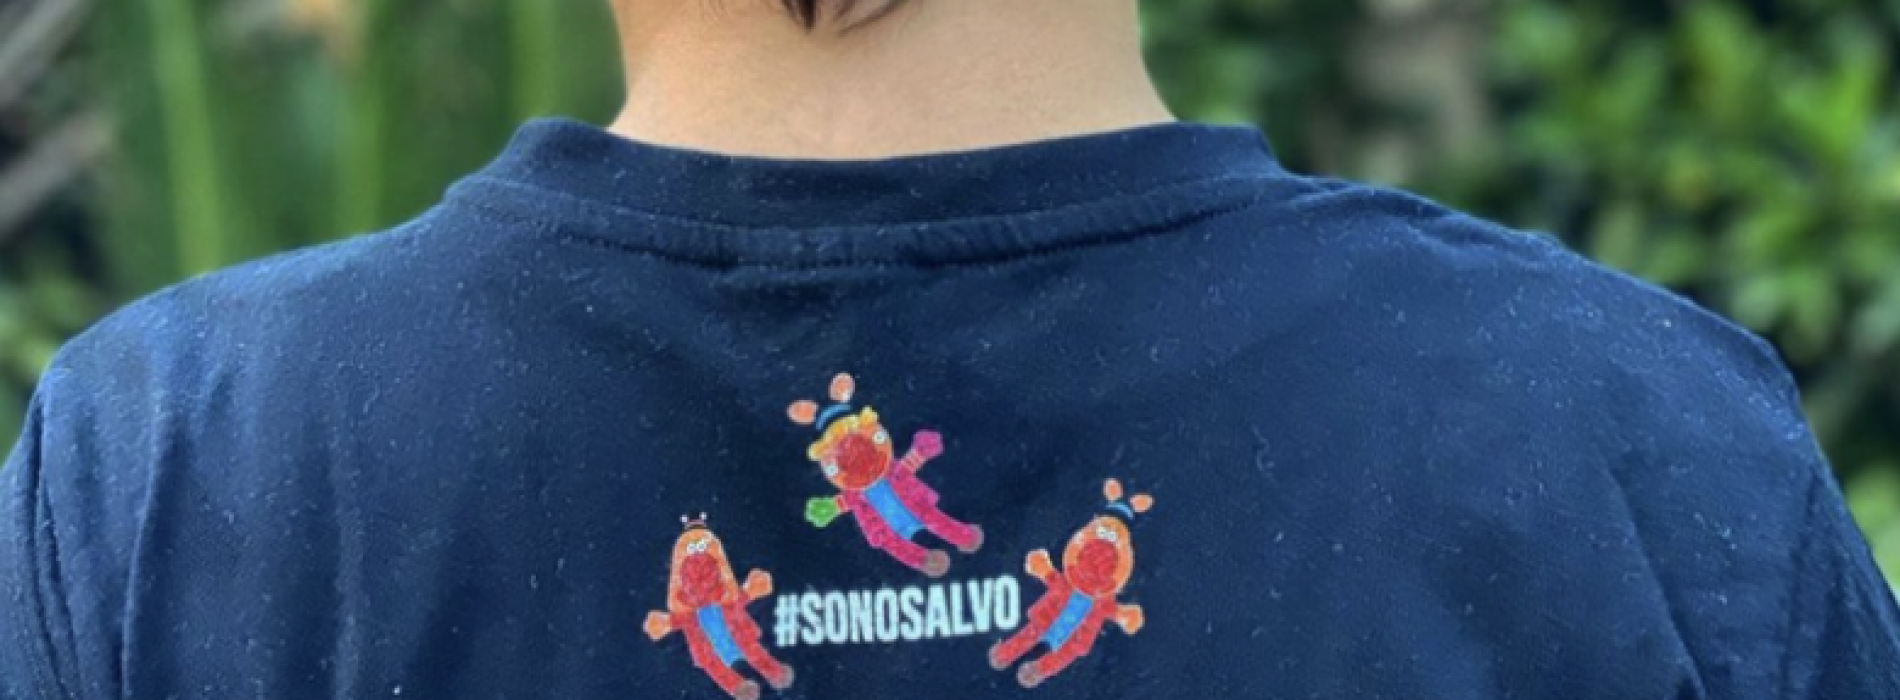 SonoSalvo e so disegnare, t-shirt firmate dal bimbo autistico